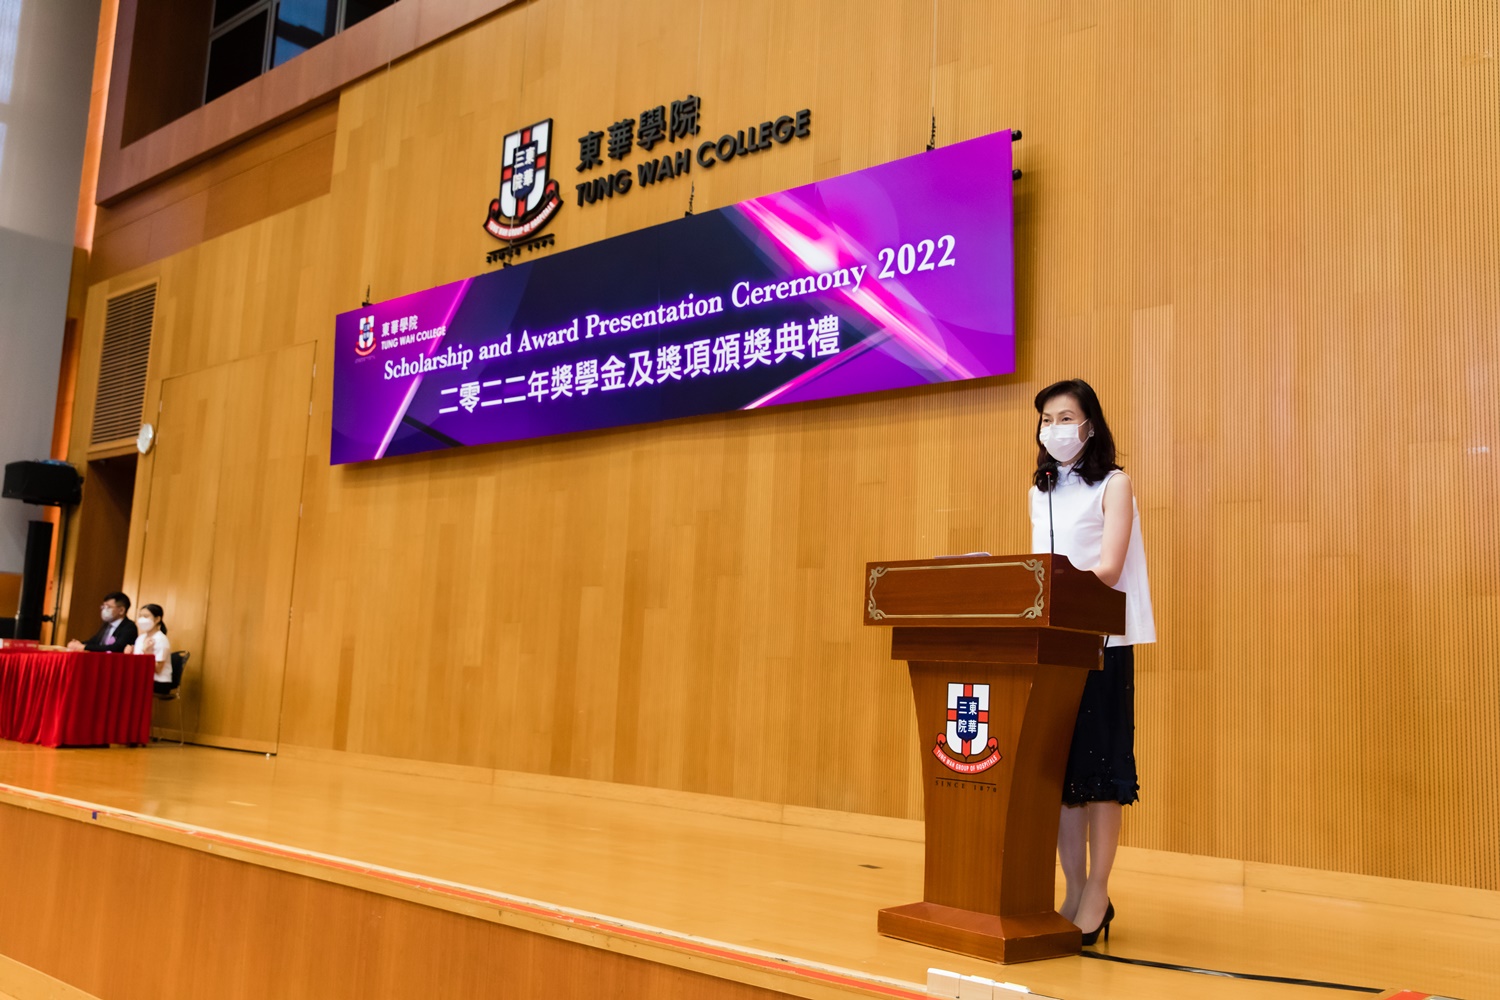 东华学院校务委员会主席陈文绮慧女士, BBS致辞时感谢捐款人的慷慨捐助，对同学的努力予以肯定。